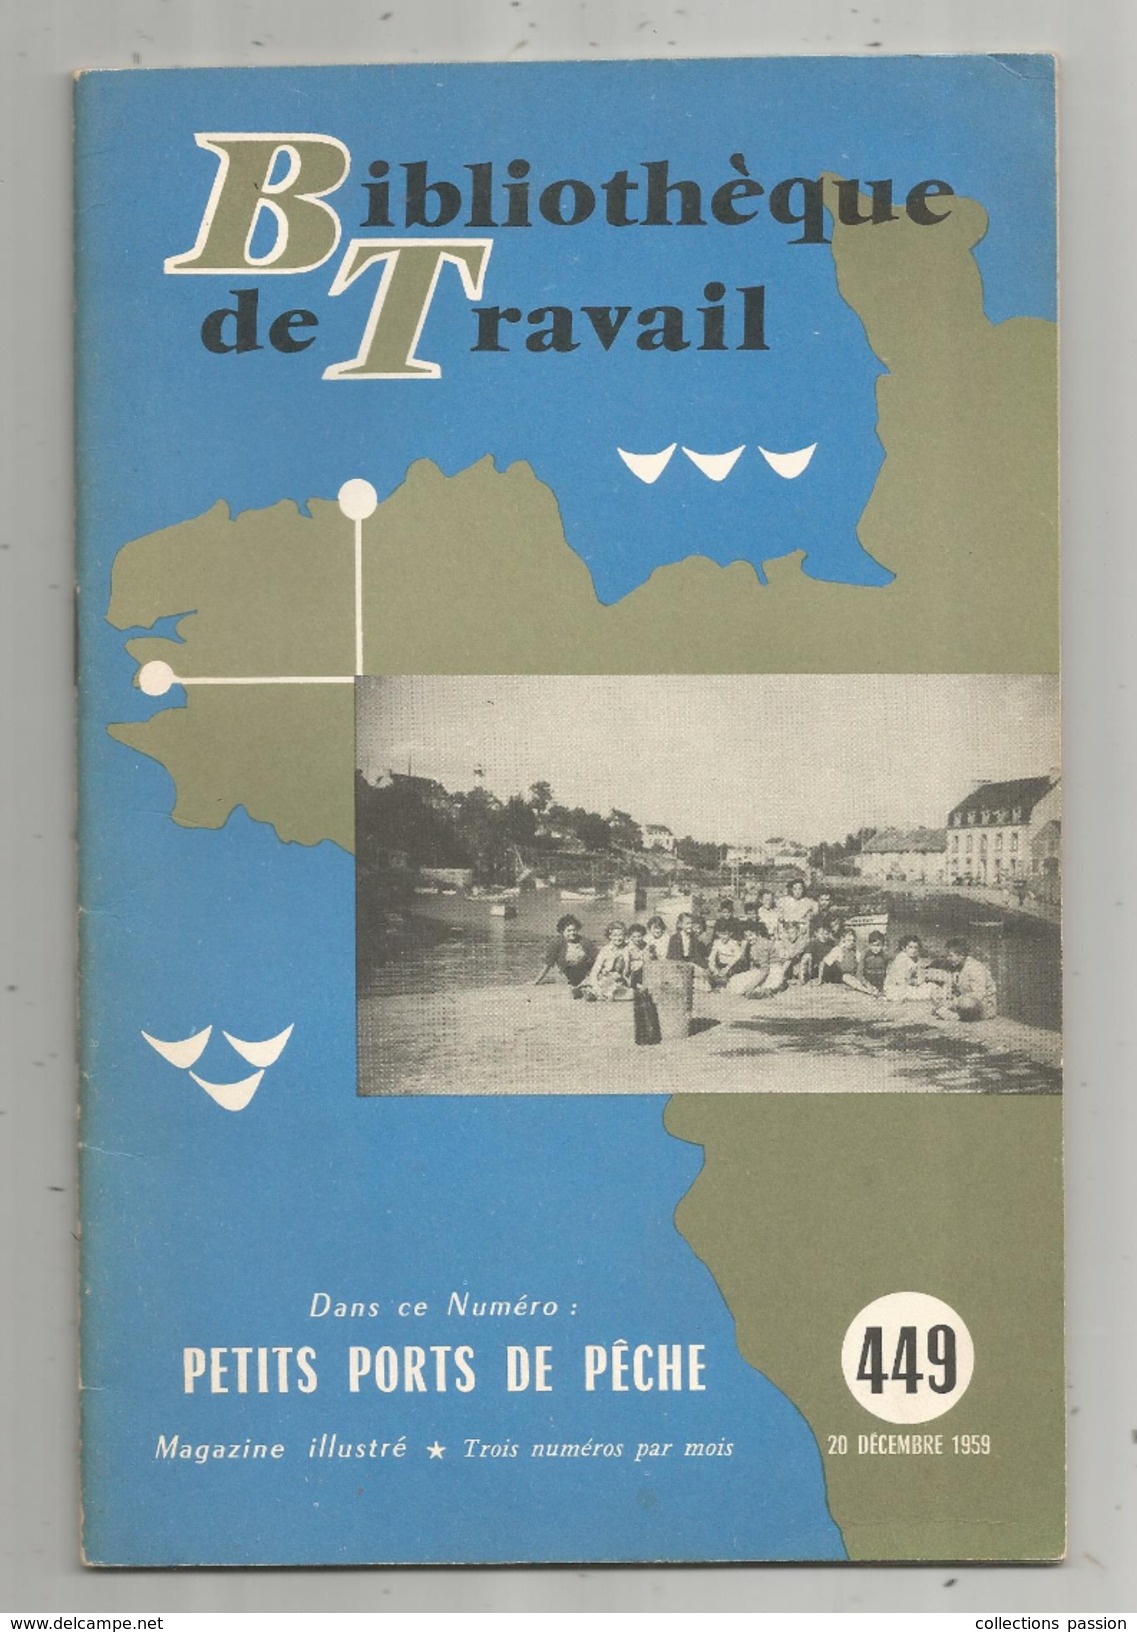 Bibliothéque De Travail, N° 449, 1959, Petits PORTS De PÊCHE, 28 Pages, Photos, Plans, Illustratration, Frais Fr : 2.45& - Chasse/Pêche